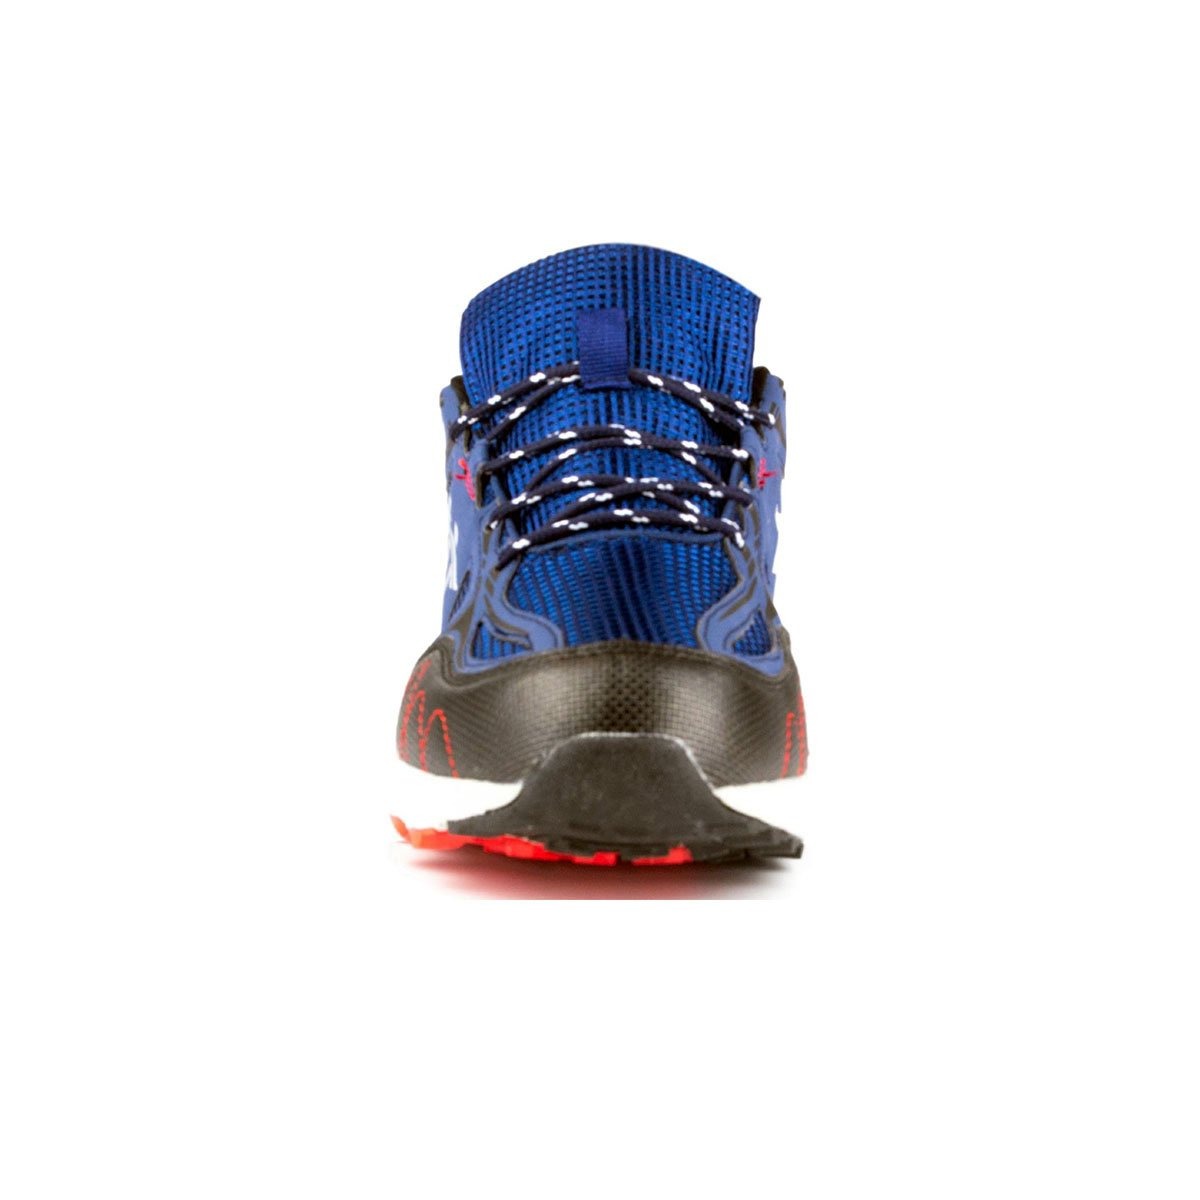 Men's Blue Lightweight Comfort Trainers - Watney Shoes 